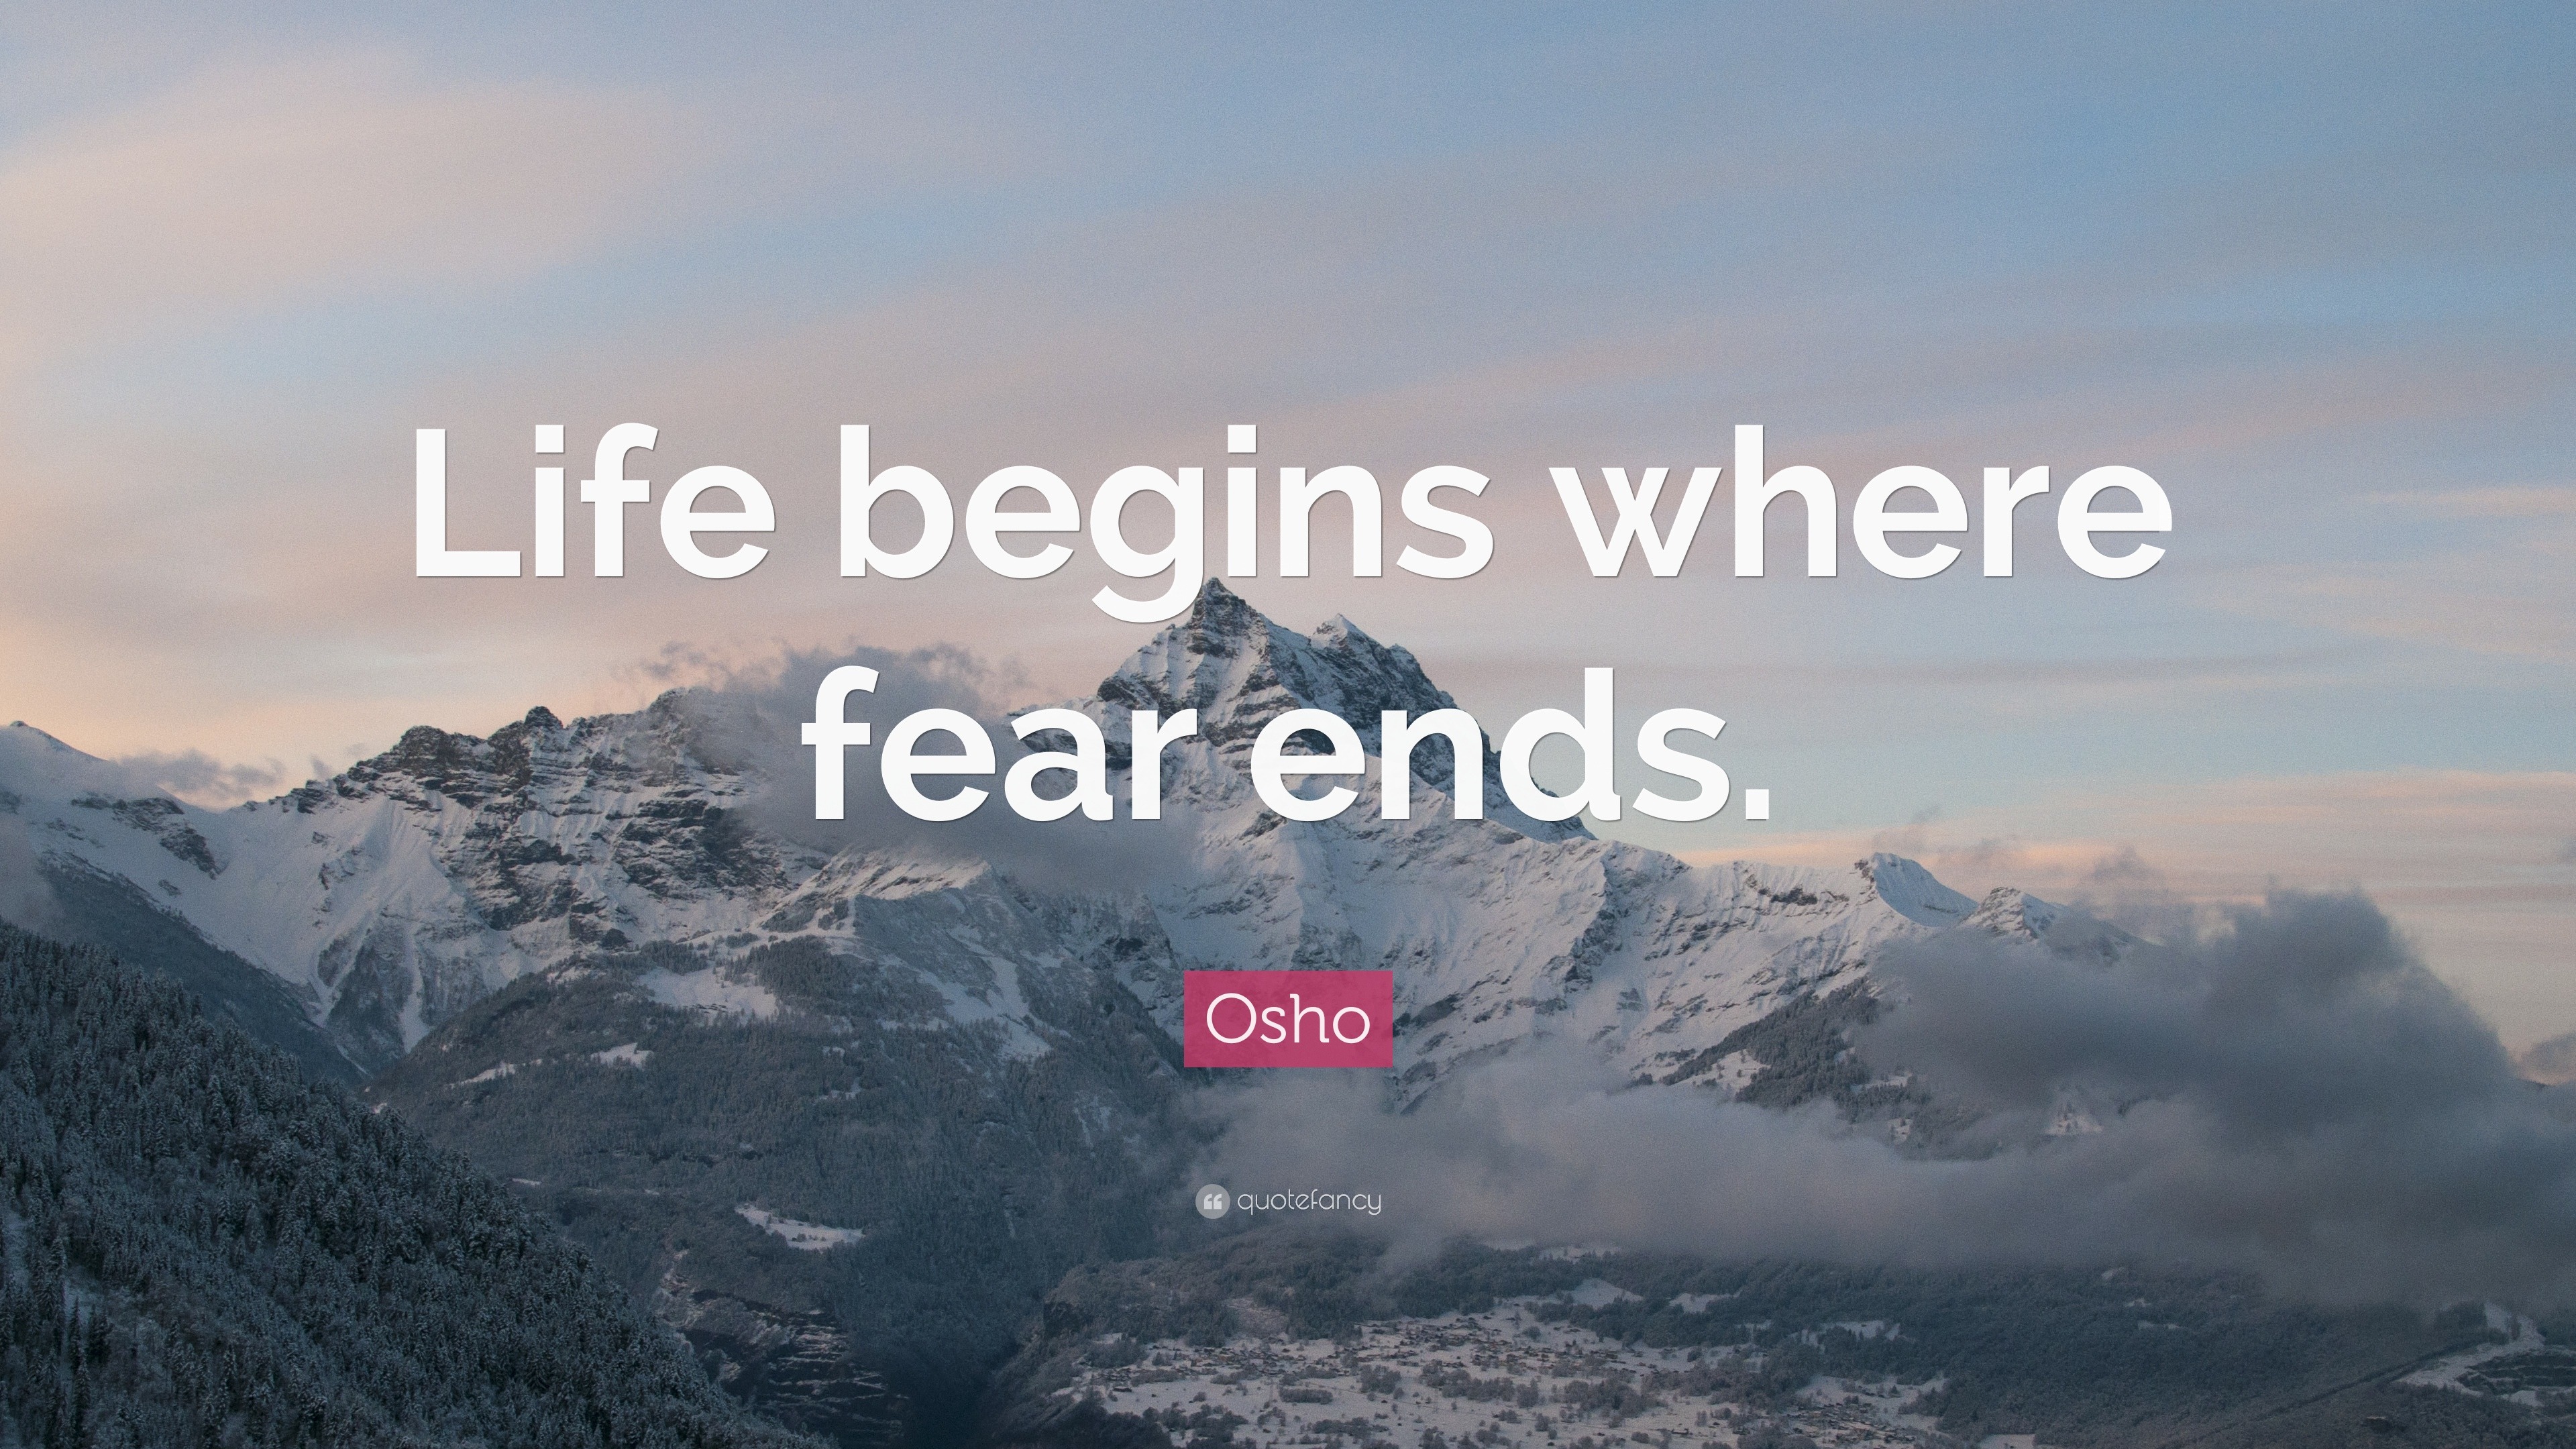 Résultat de recherche d'images pour "life begins when fear ends mountain pic"